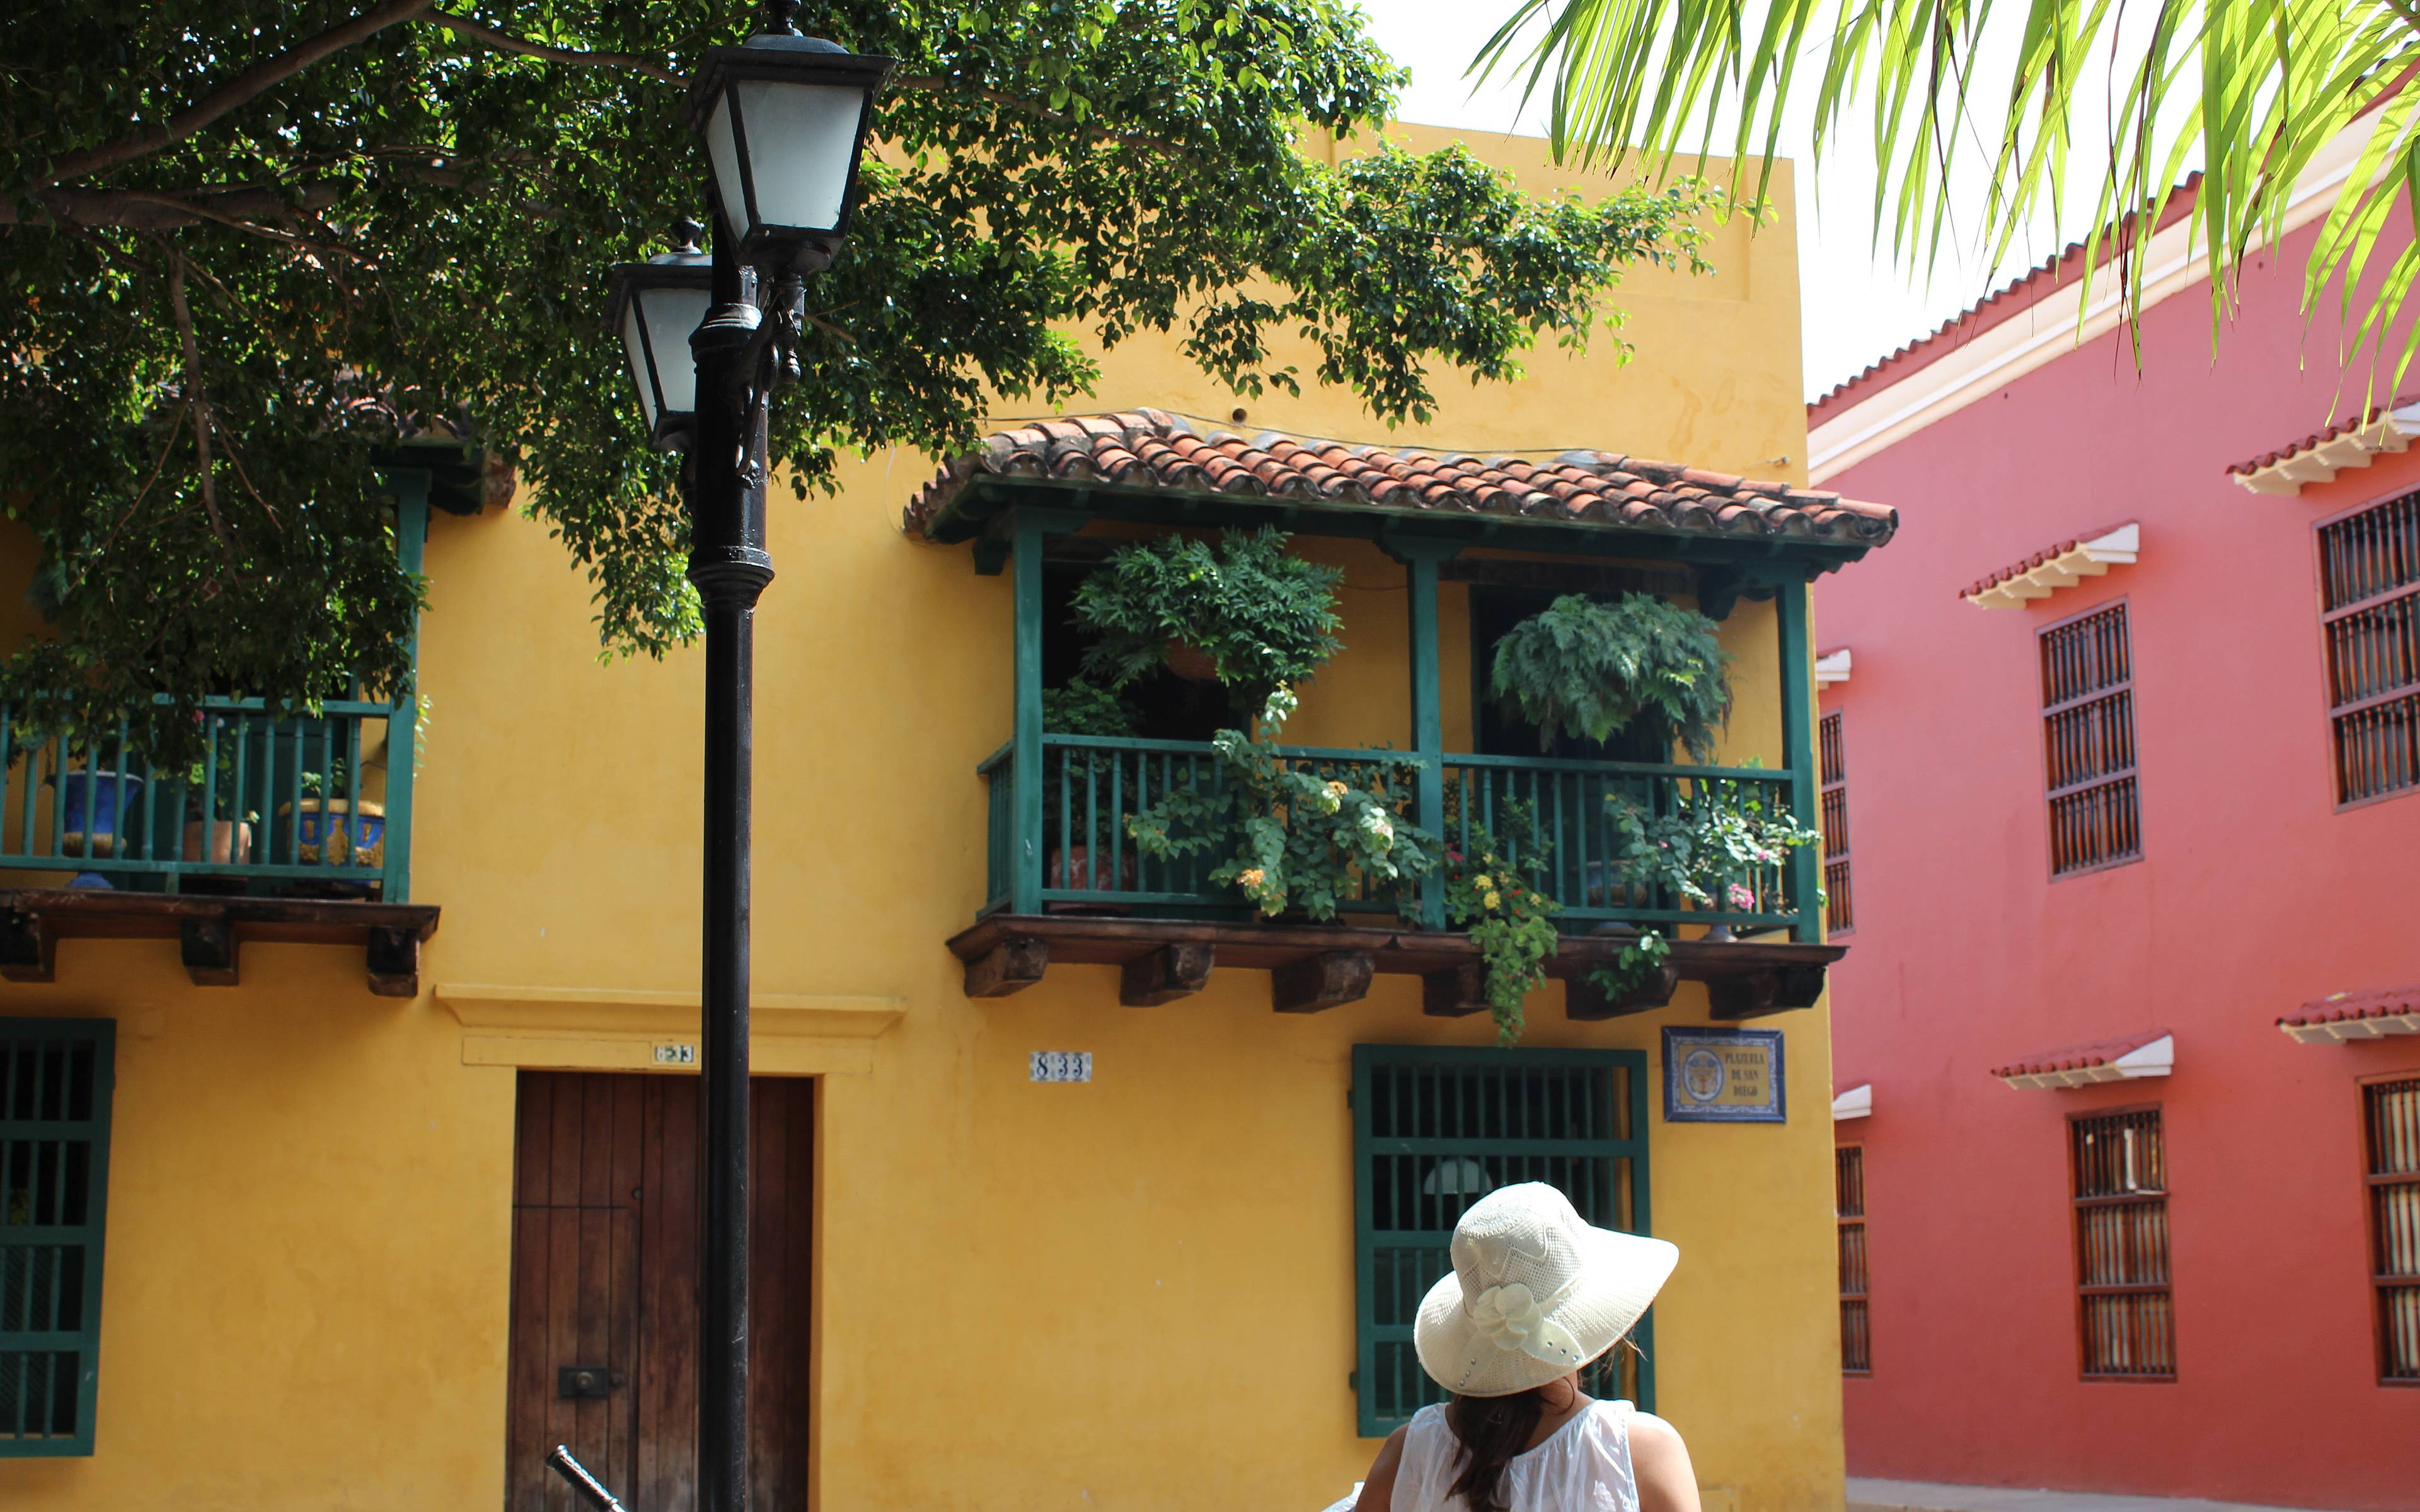 Giornata libera per visitare Cartagena de Indias